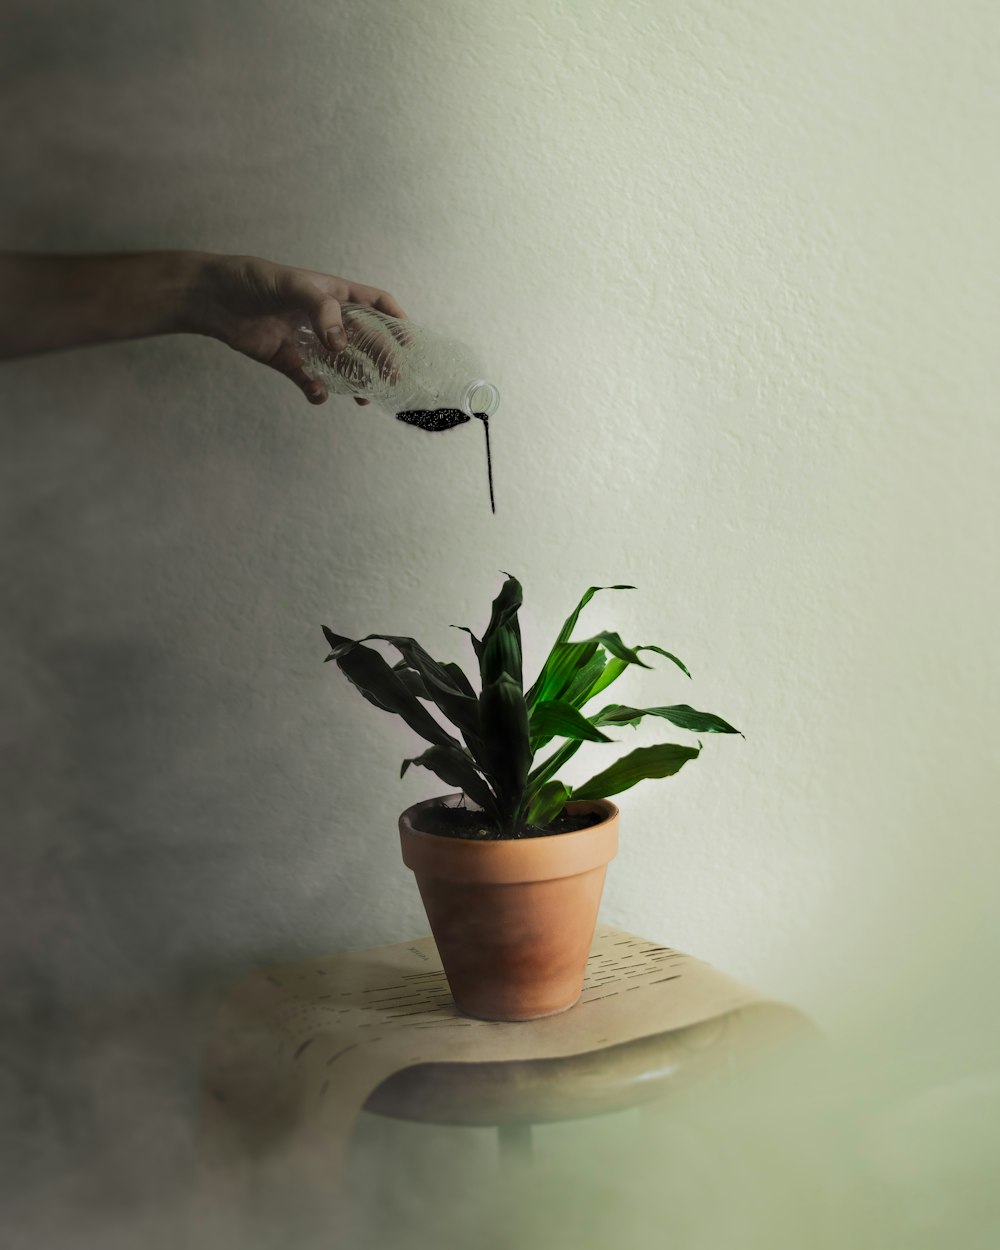 persona regando planta de hojas verdes con líquido negro